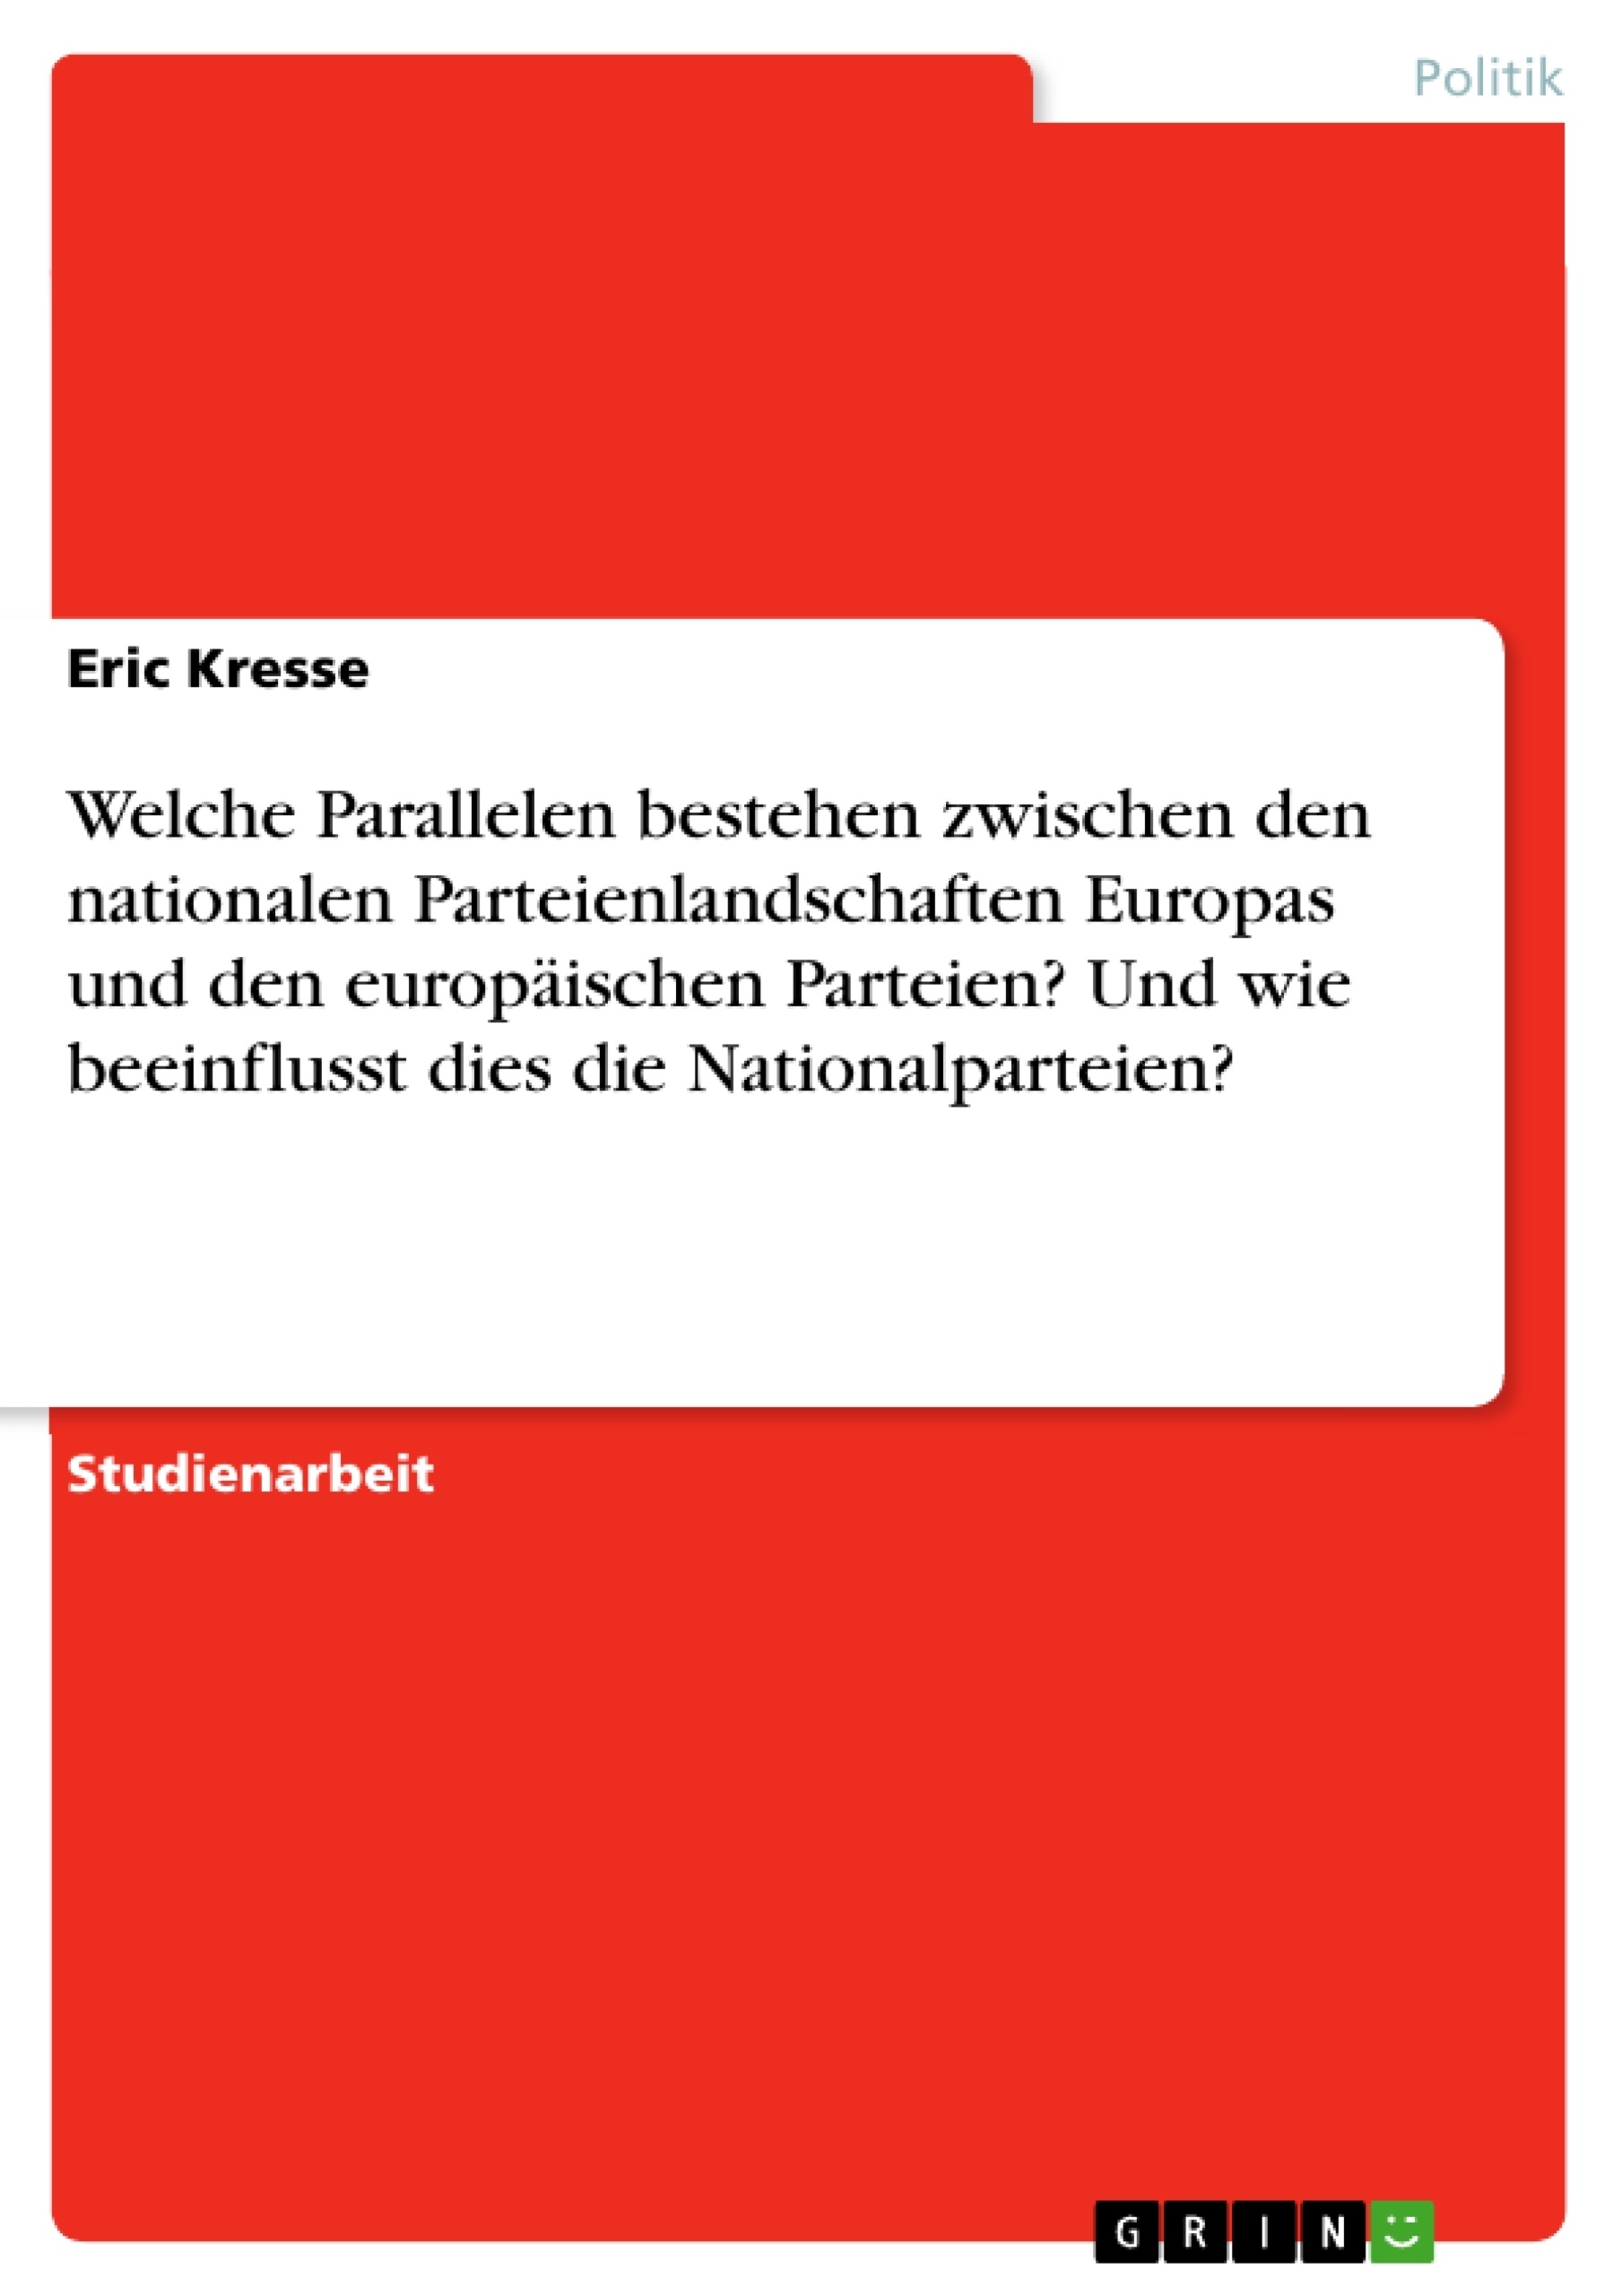 Titel: Welche Parallelen bestehen zwischen den nationalen Parteienlandschaften Europas und den europäischen Parteien? Und wie beeinflusst dies die Nationalparteien?